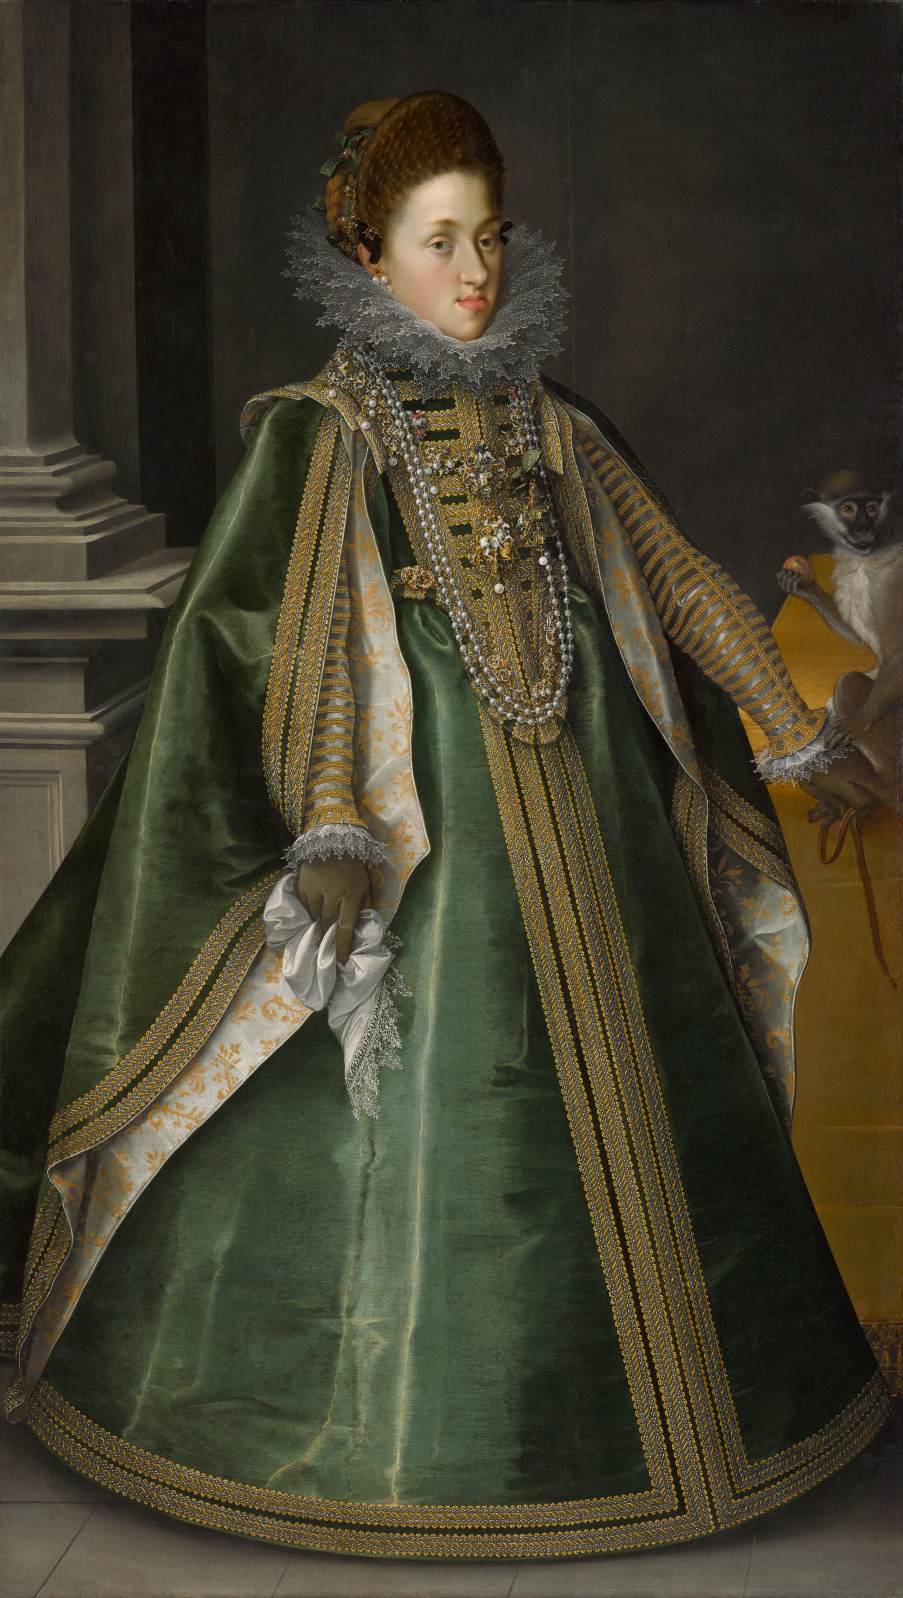 Konstanze von Habsburg, Archduchess of Central Austria